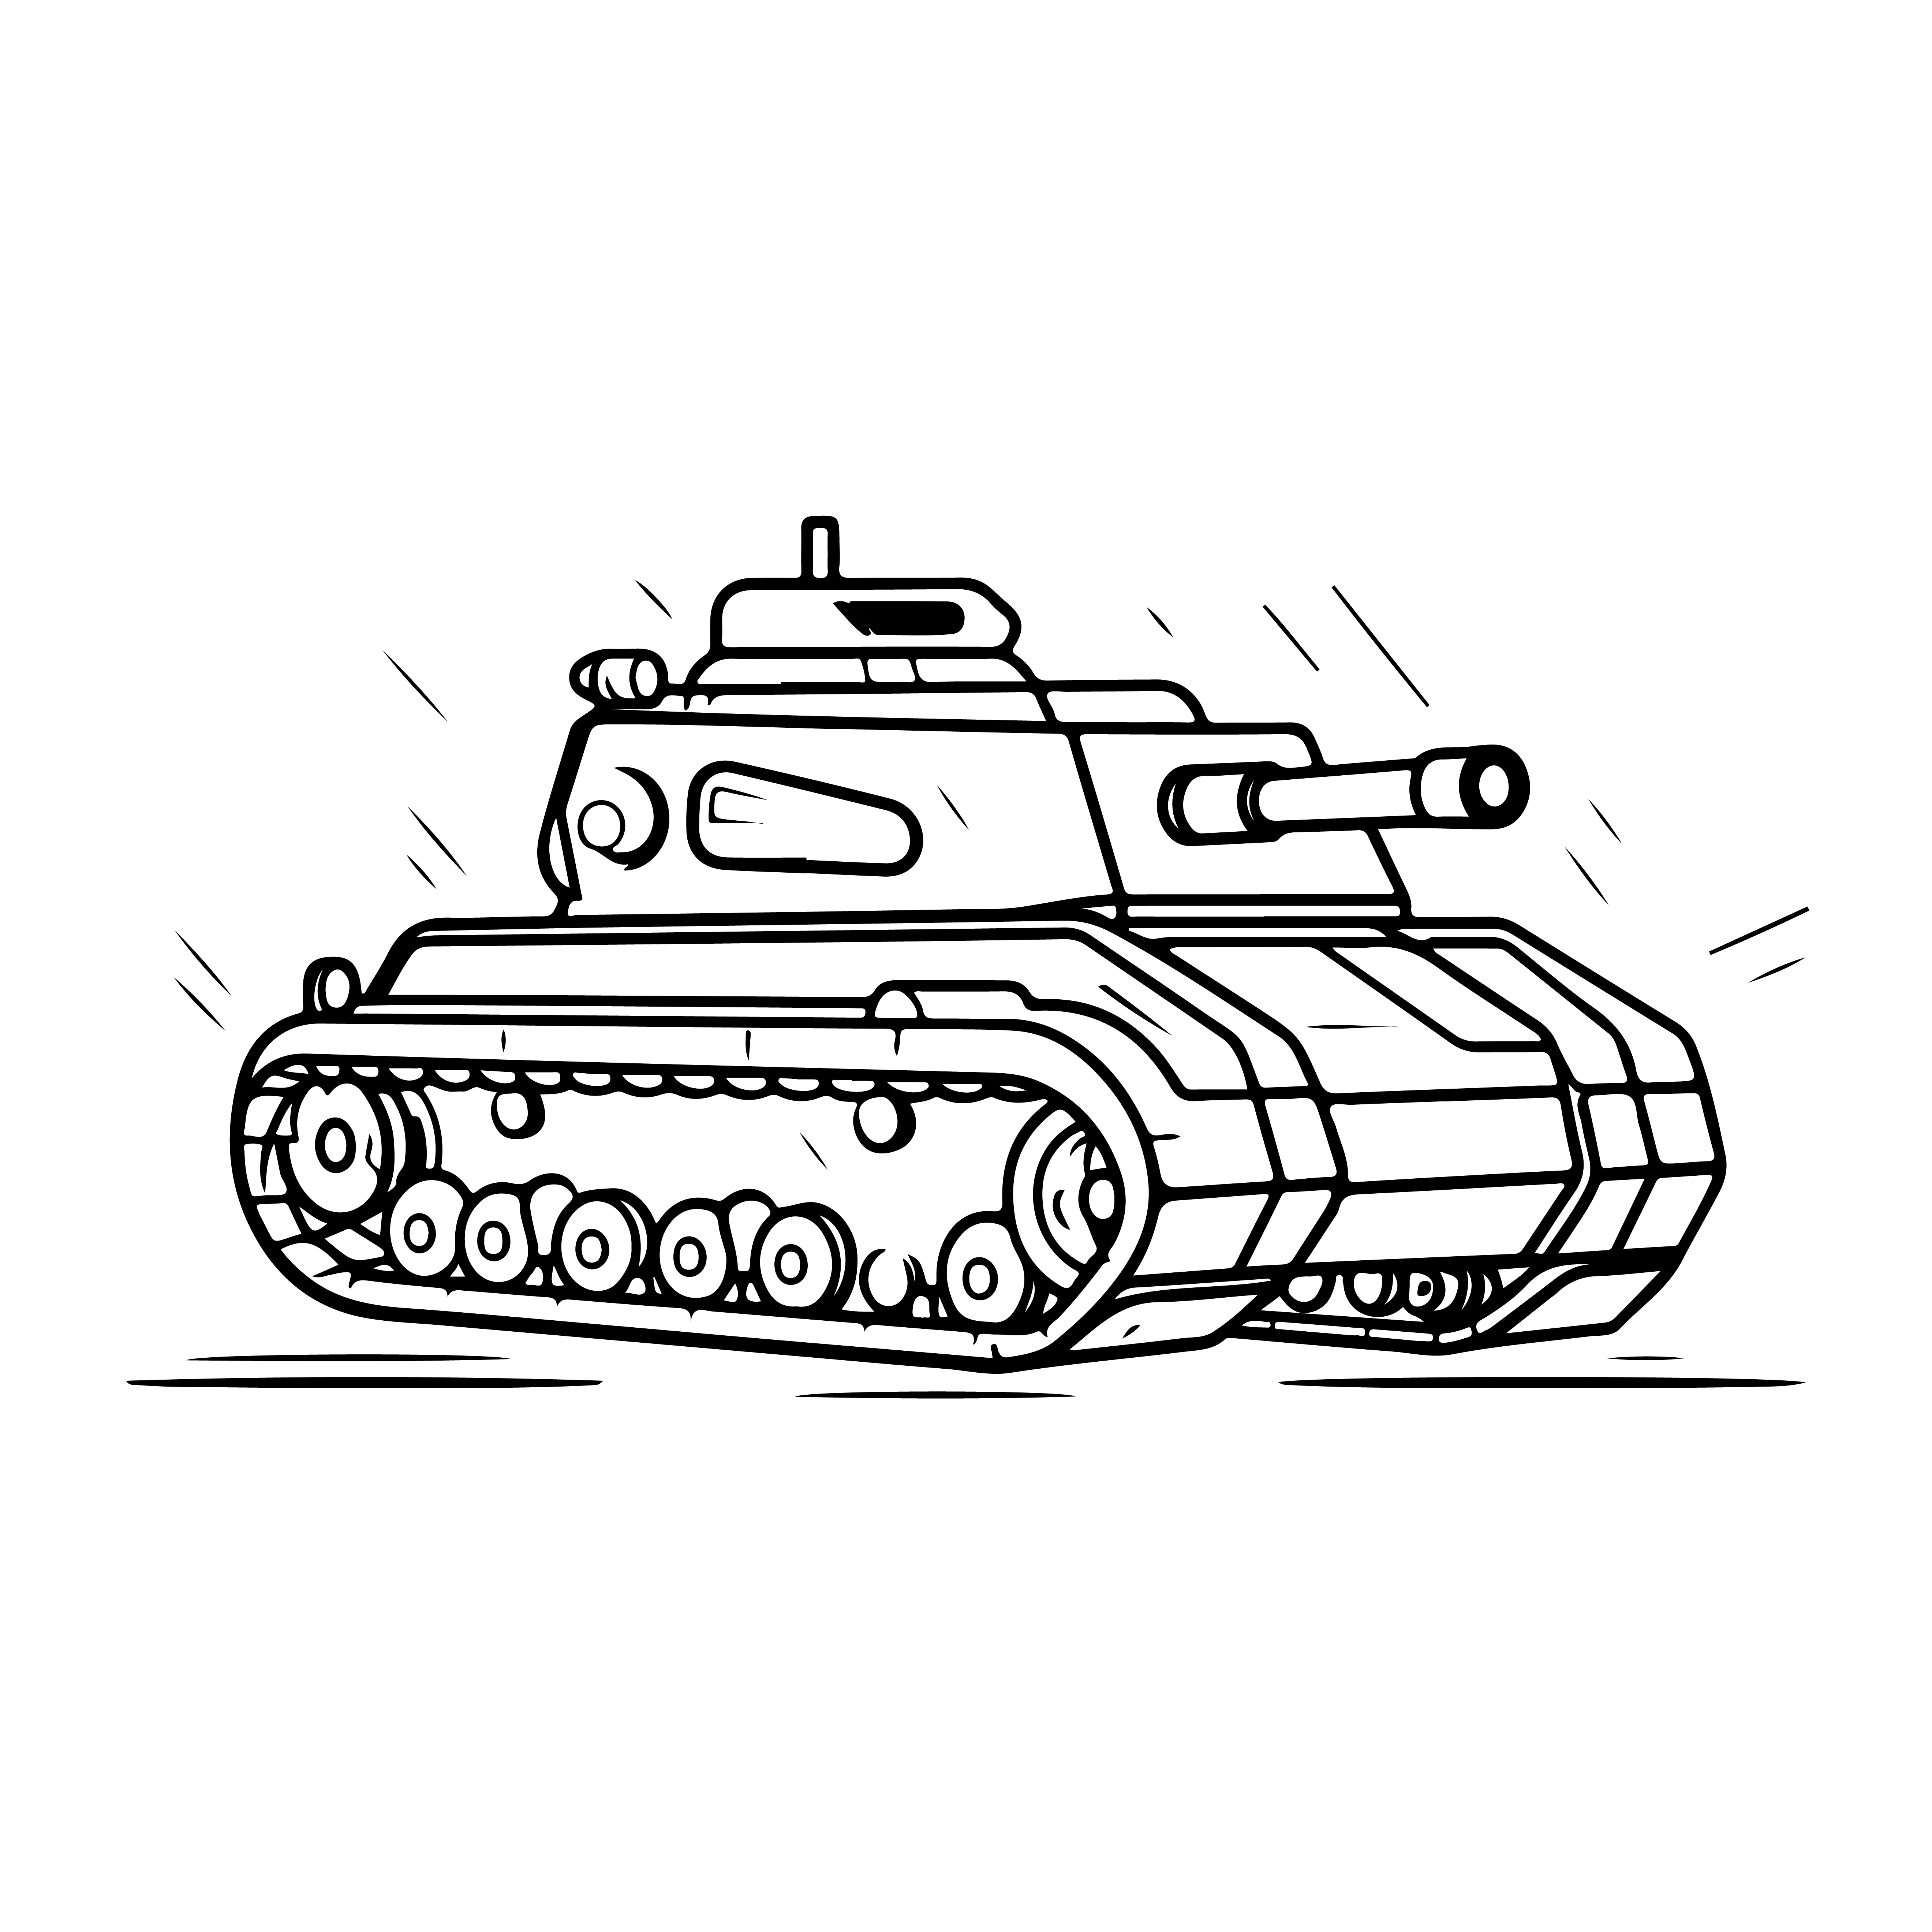 Раскраска танк «Разрушитель асфальта» формата А4 в высоком качестве